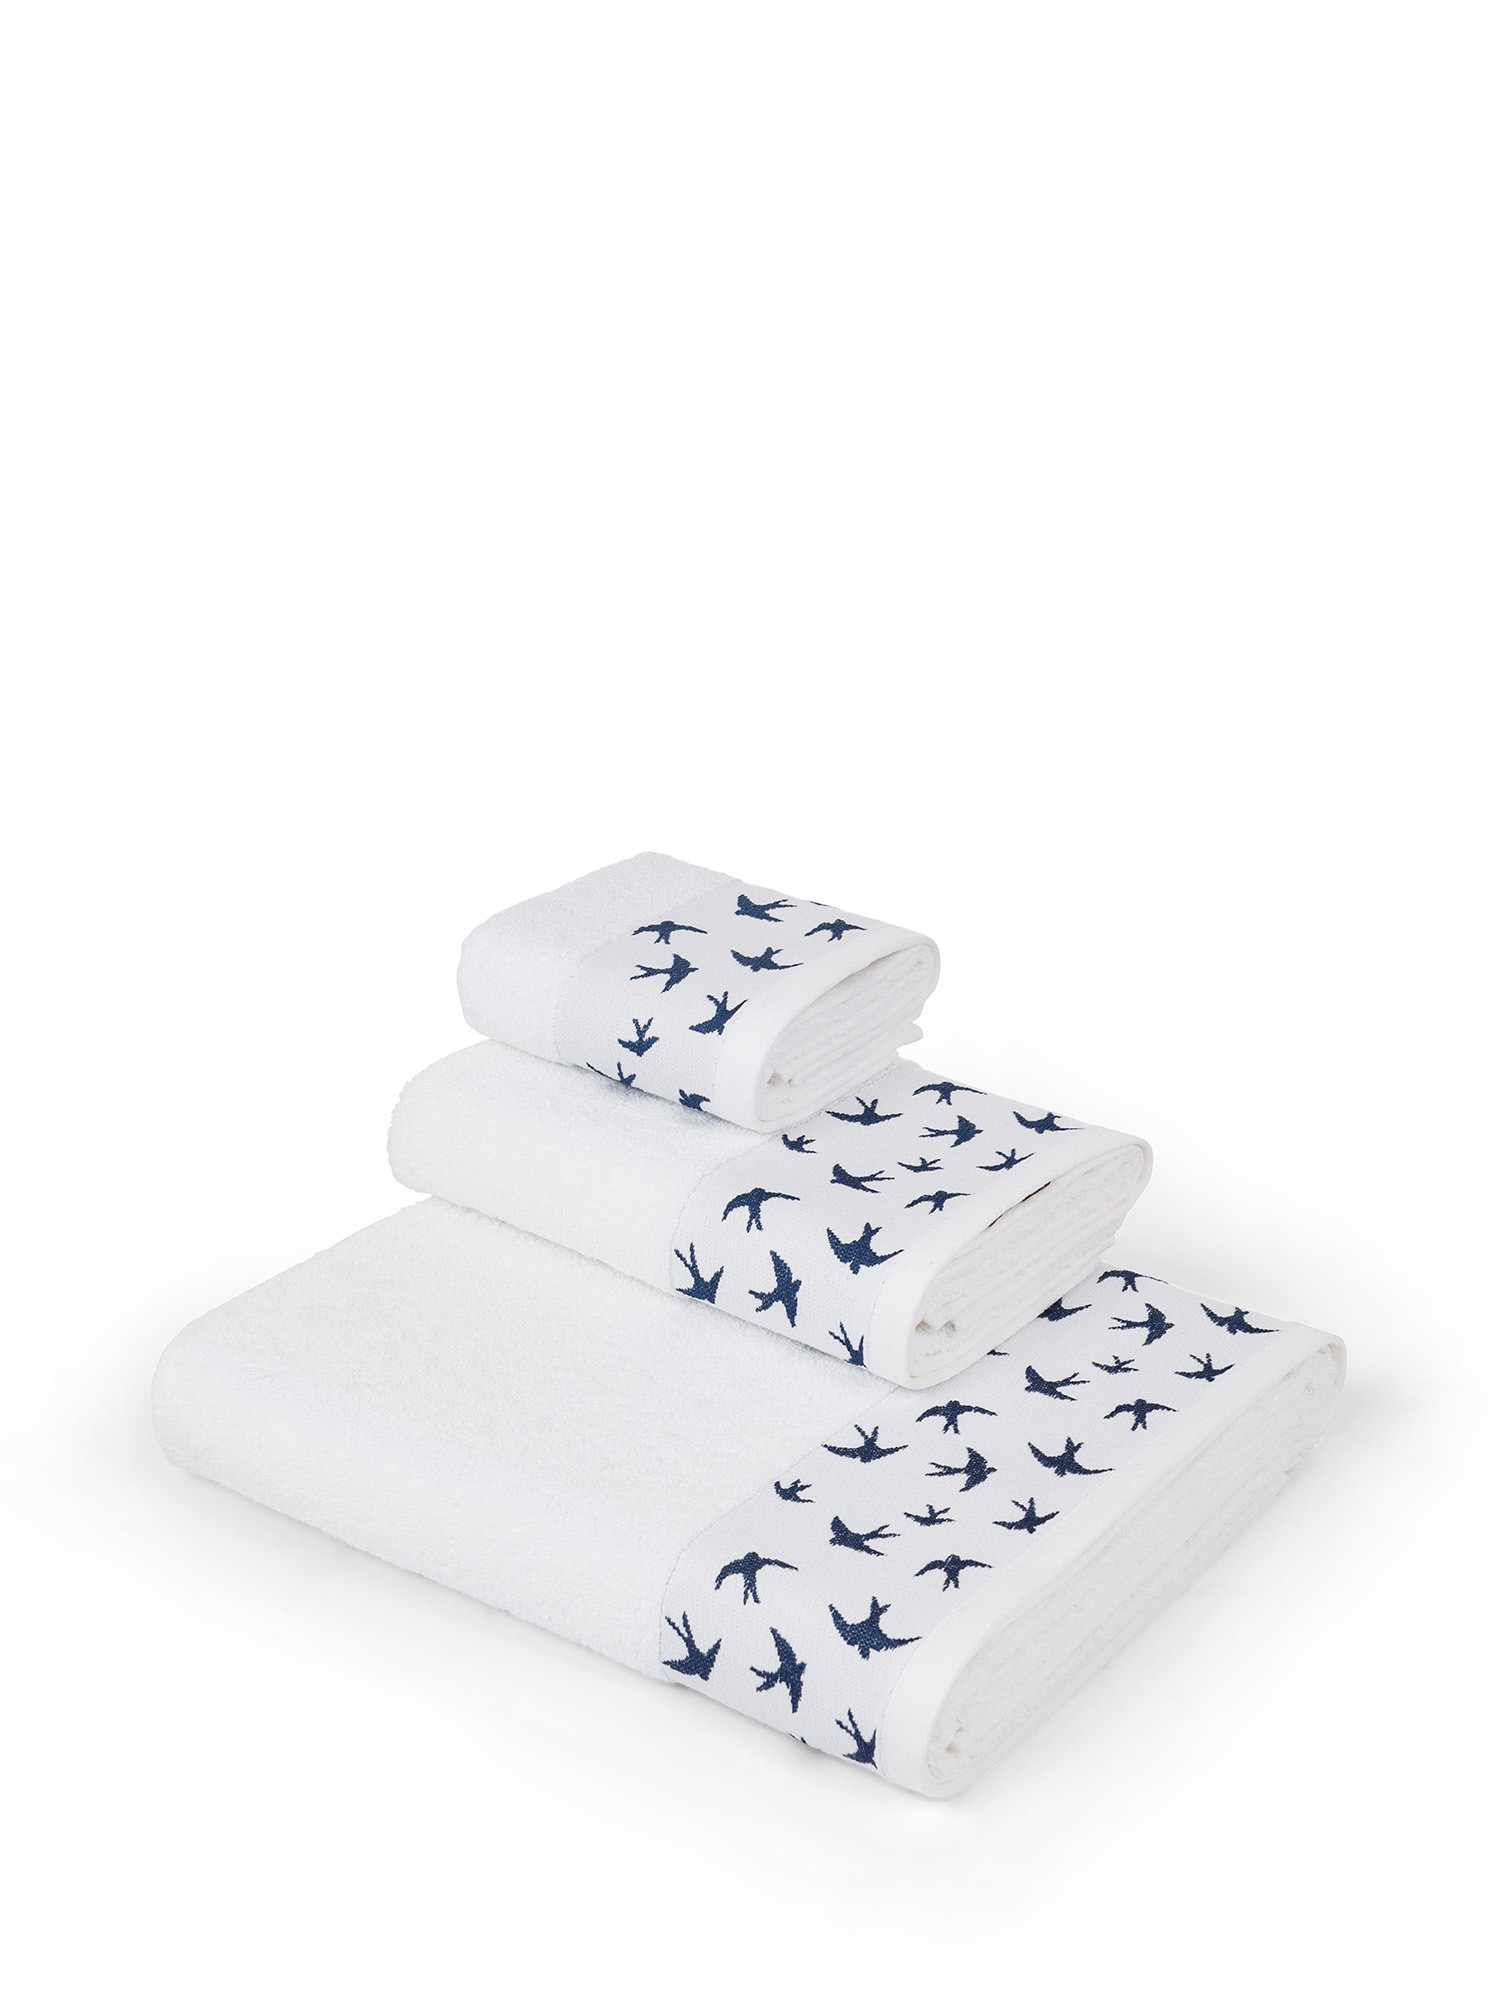 Asciugamano in spugna di puro cotone con ricamo rondini, Bianco, large image number 0